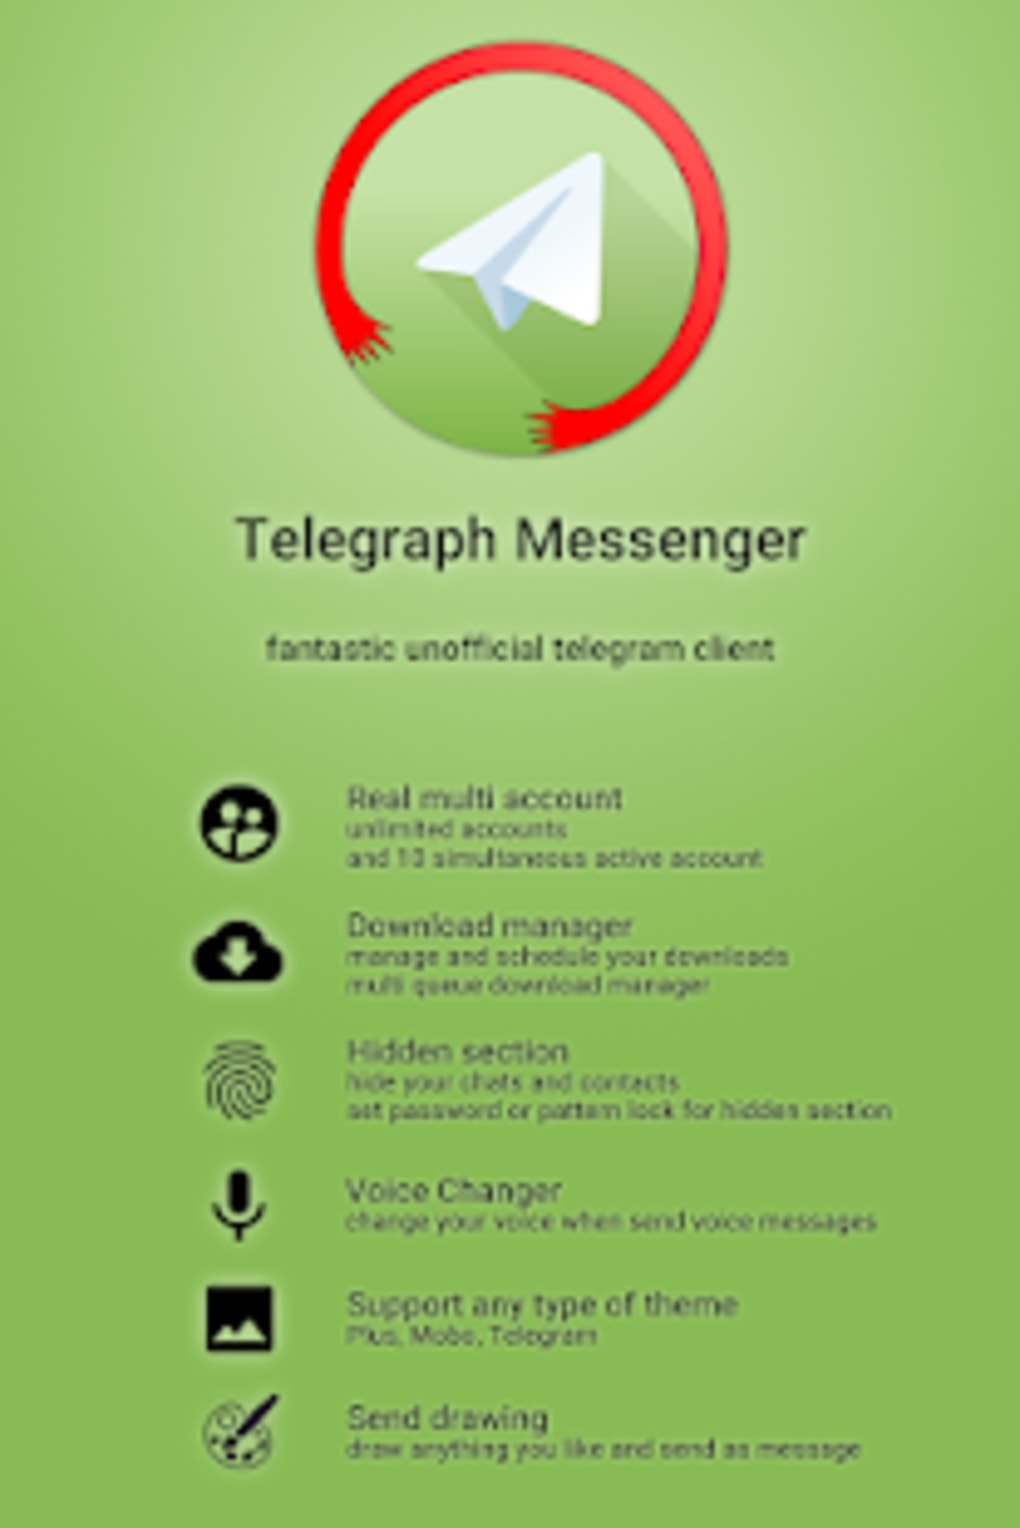 Скачать на телефон приложение телеграмм бесплатно русском языке андроид фото 67